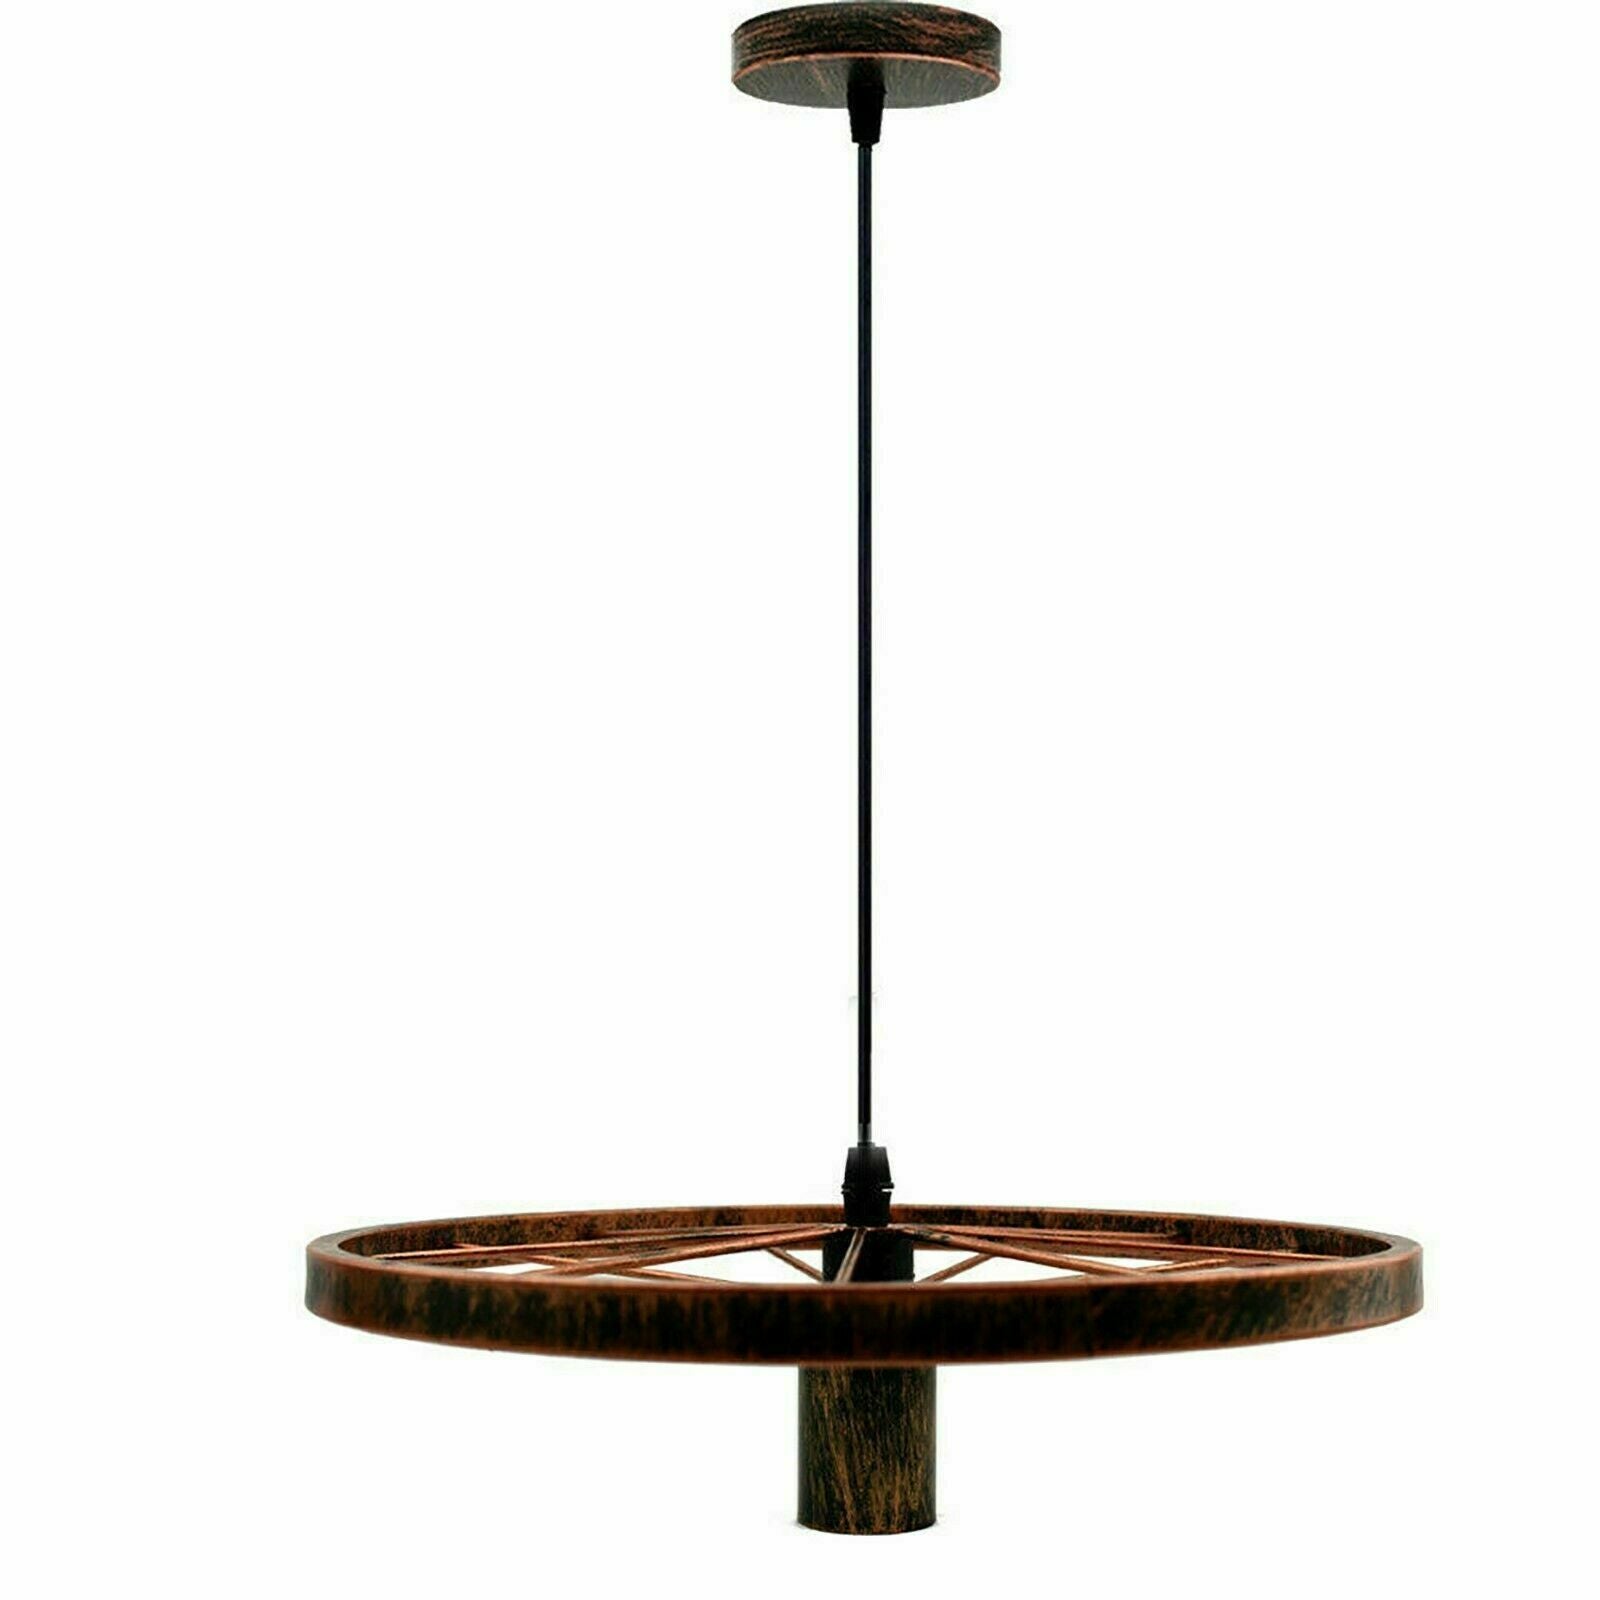 Modern Industrial Retro Pendant Lamp Ceiling Light Wheel Light for Bedroom cafe~2245 - LEDSone UK Ltd